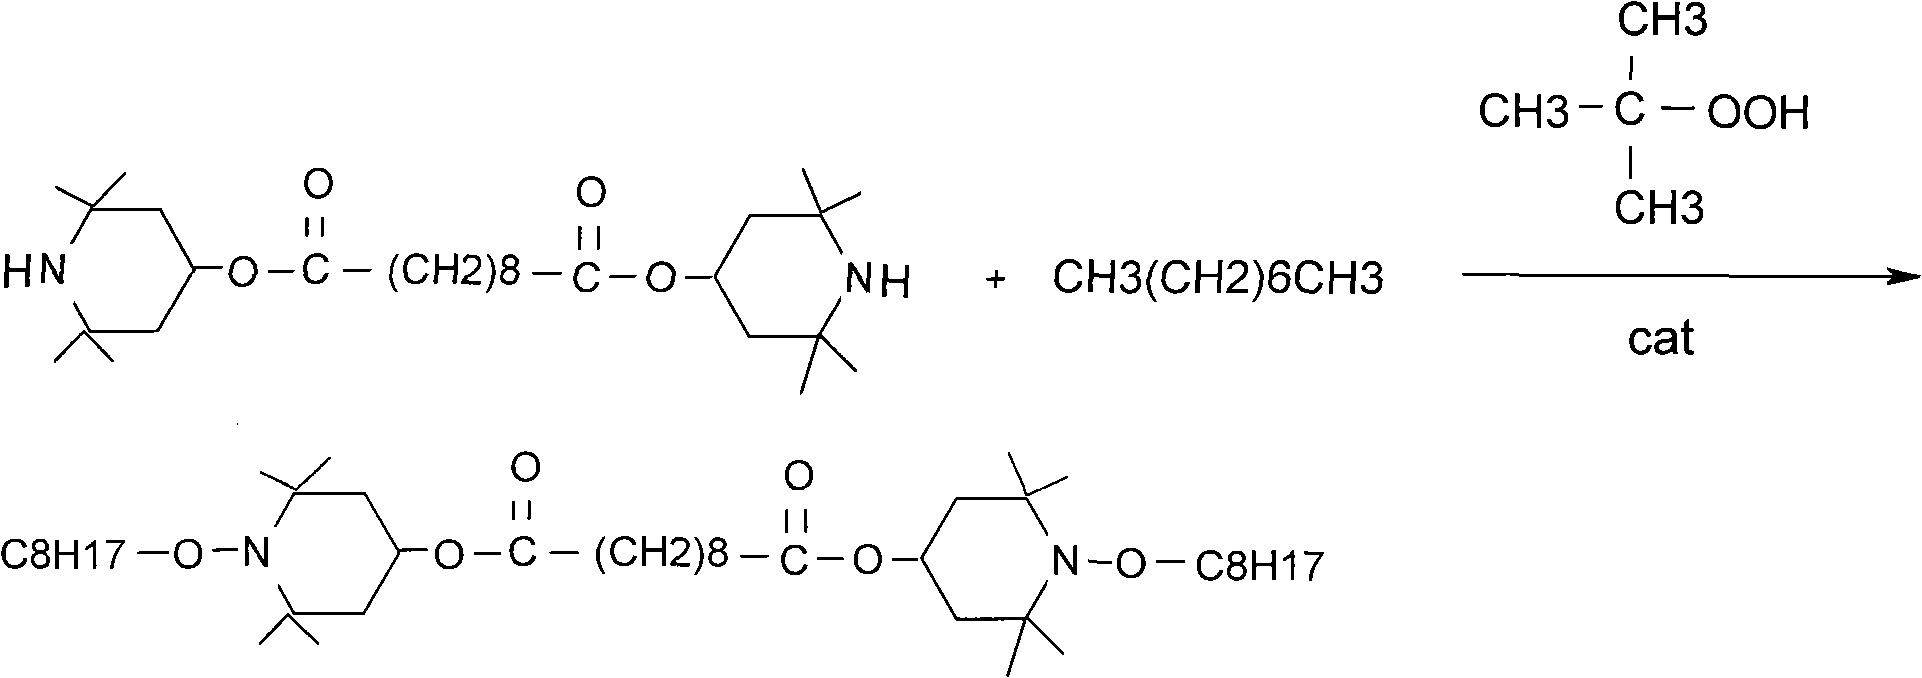 Process for preparing bi-(n-octyloxy-2,2,6,6-tetramethyl-piperidyl) diester sebacate